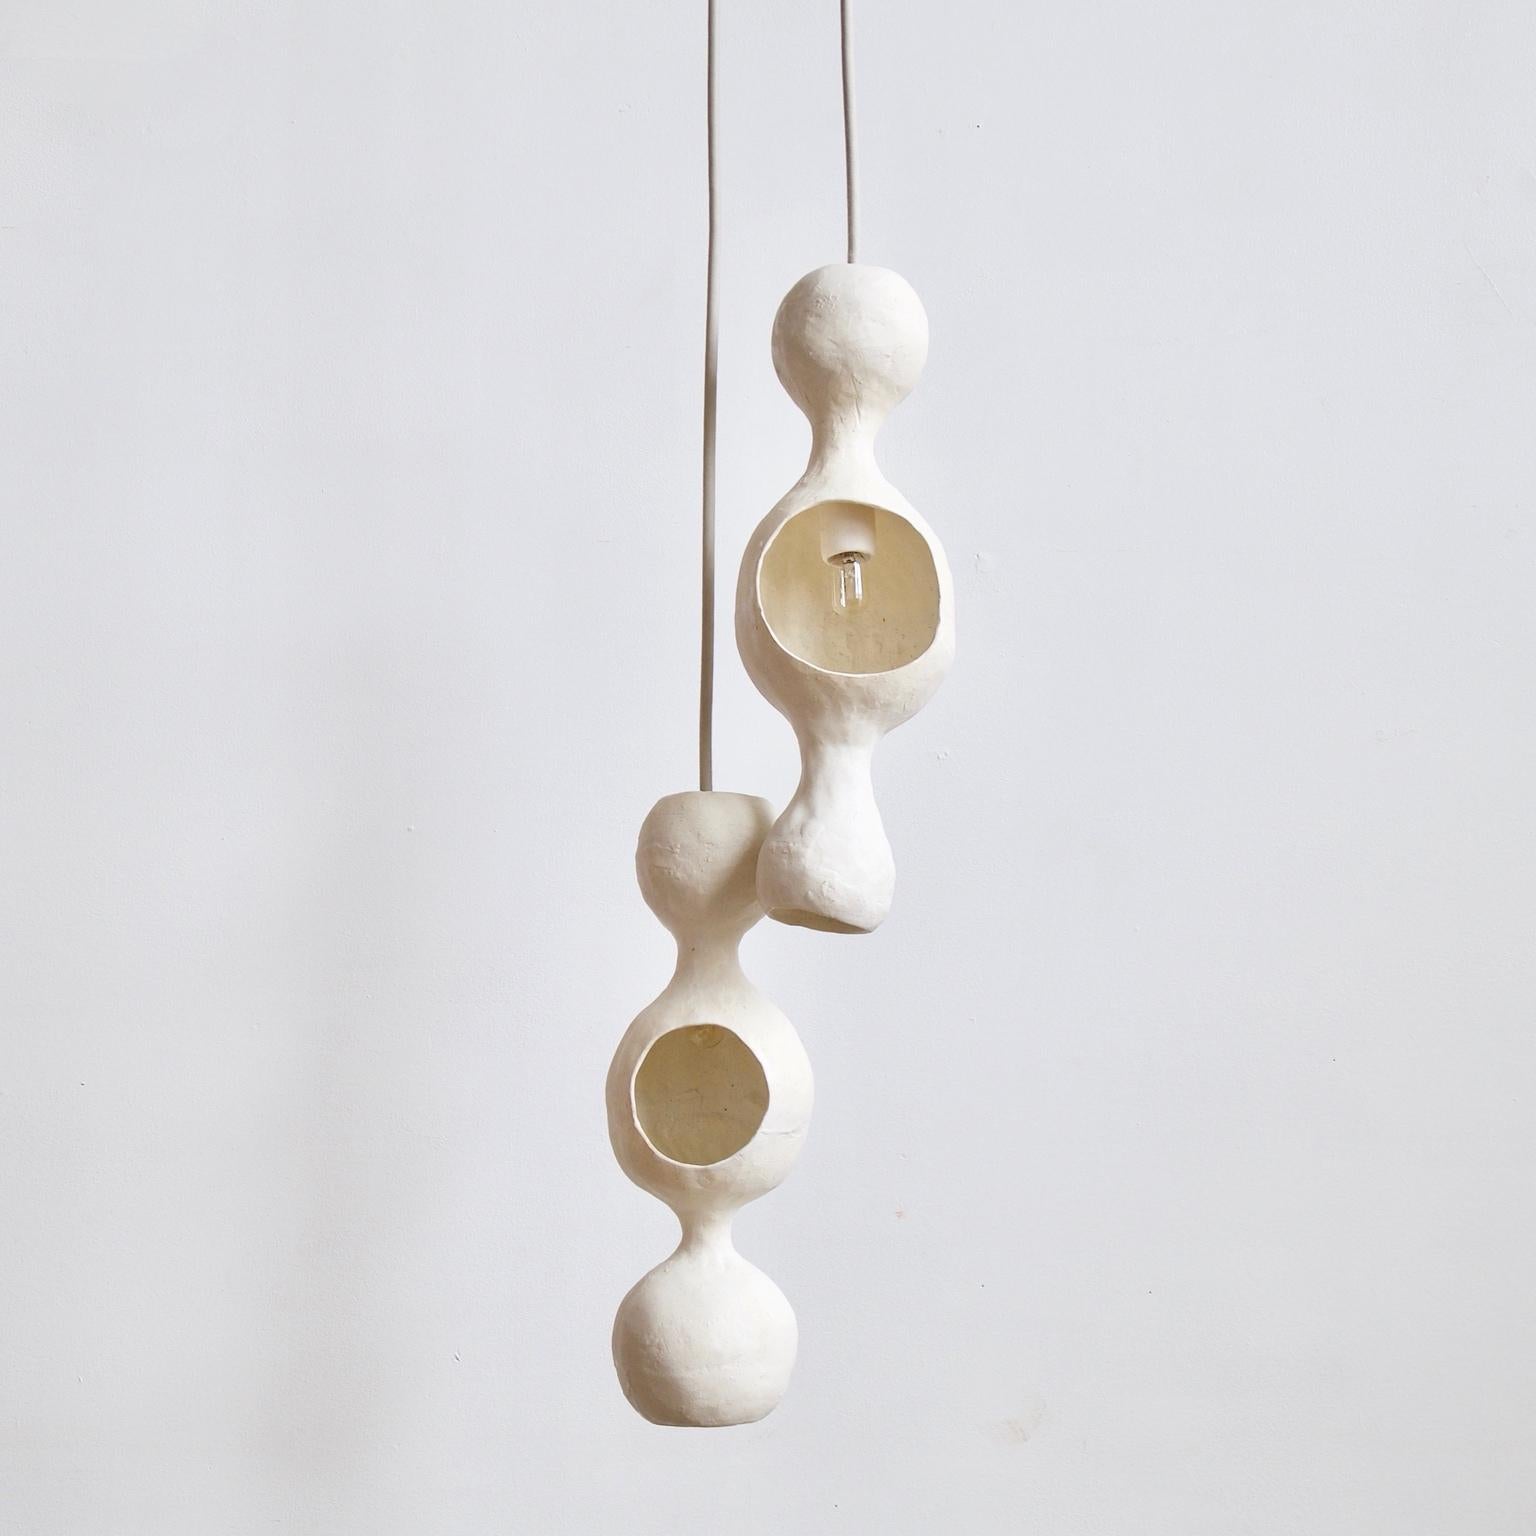 Le couple White Bowerbird est une lampe pendante contemporaine en céramique à double coque fabriquée à la main, finie dans une glaçure blanche mate avec une lueur chaude se reflétant sur une forme ronde et joyeuse. Chaque coquille est formée à la